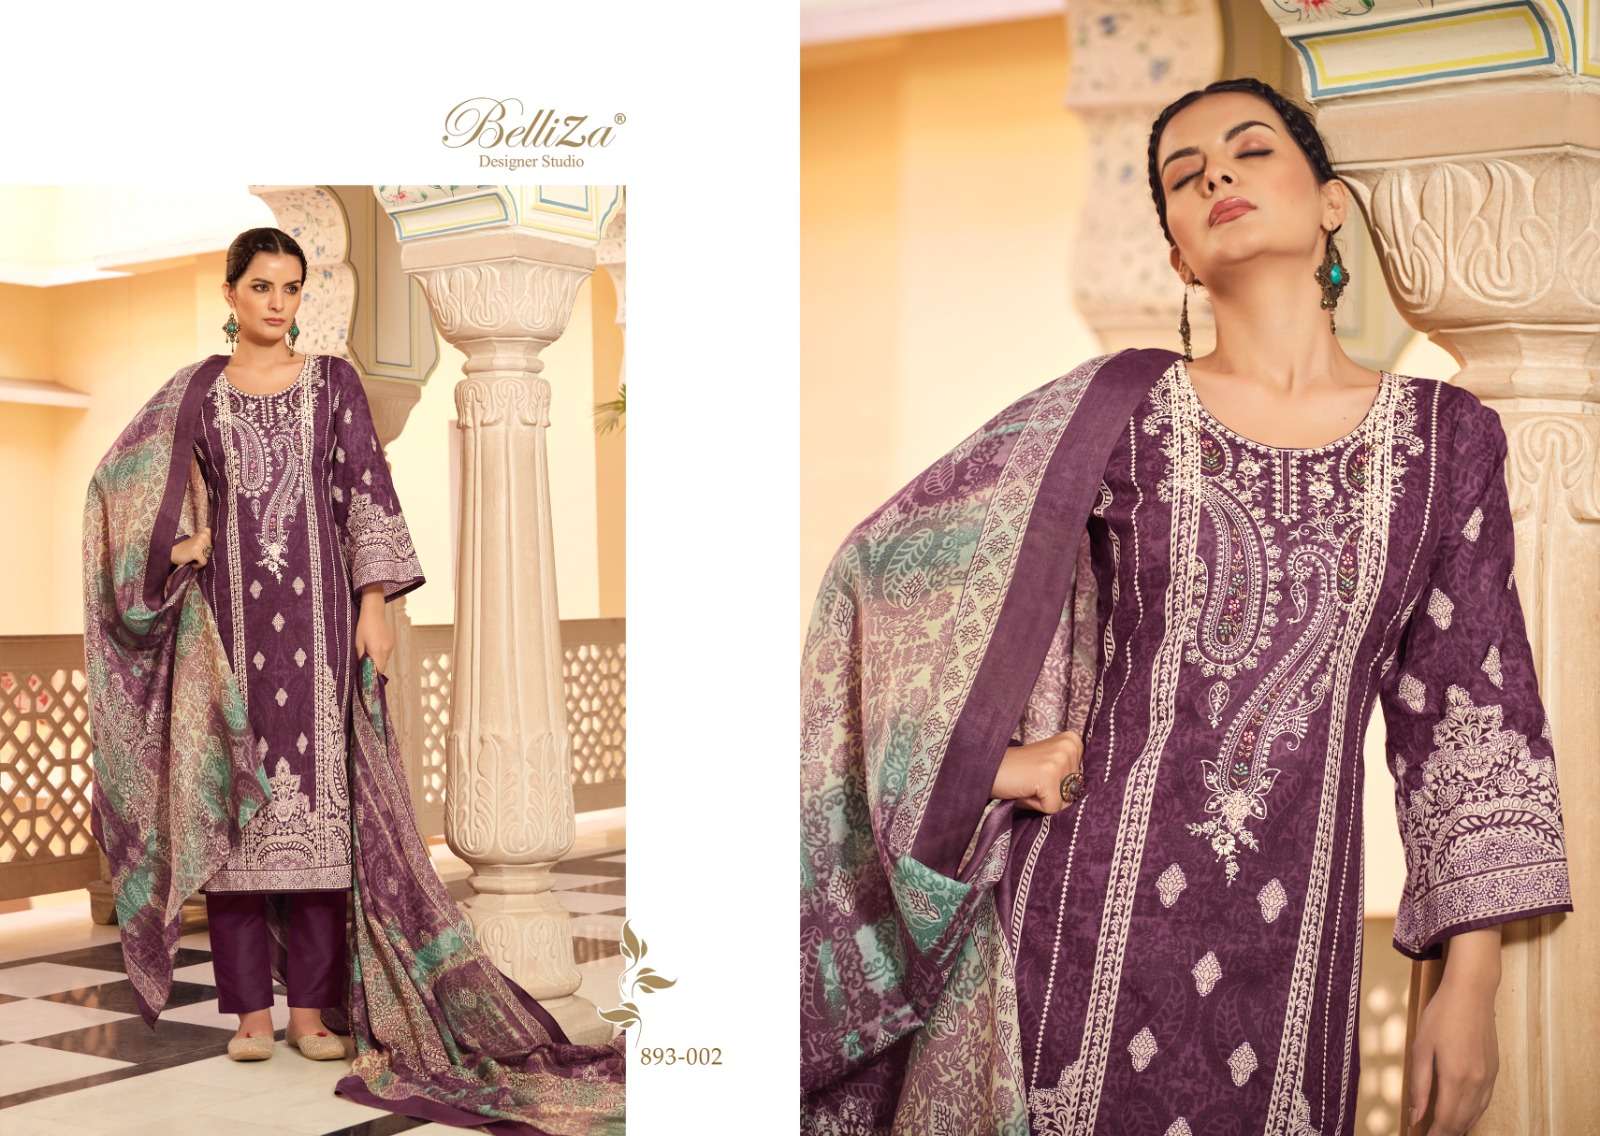 Belliza Naira Vol 41 Cotton Digital Printed Dress Material Wholesale catalog